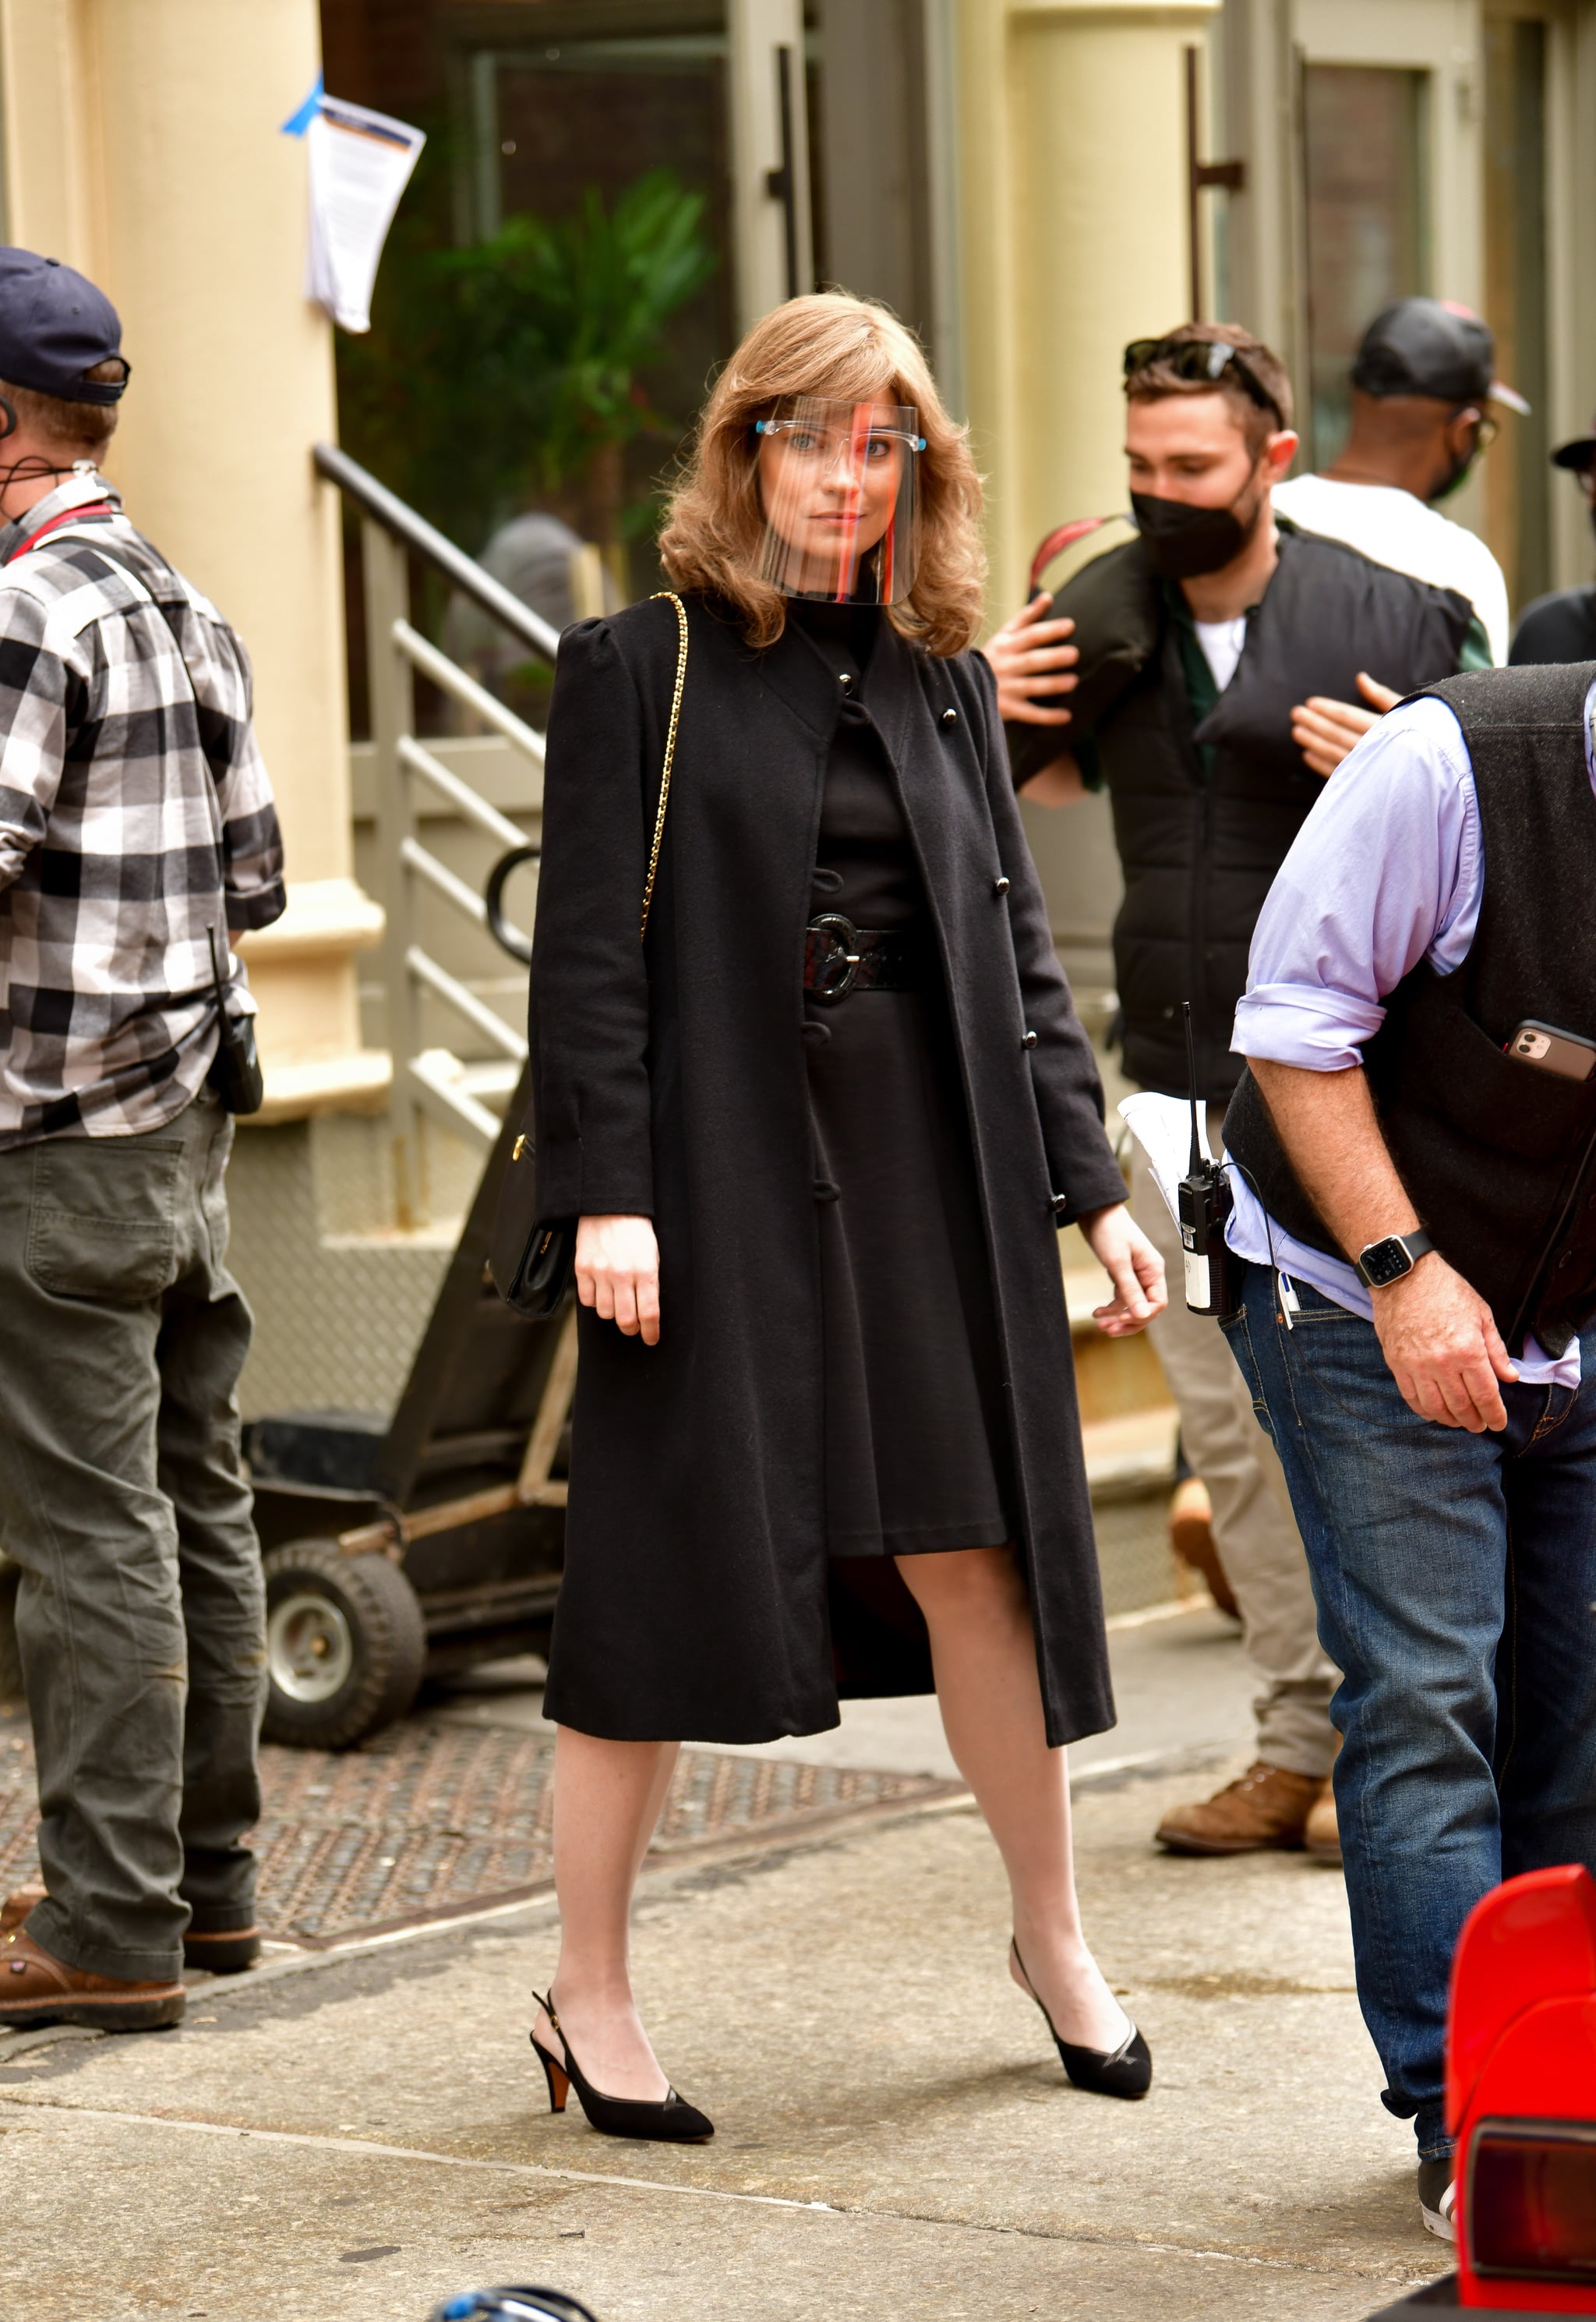 Schitt's Creek' Star Annie Murphy Joins 'Russian Doll' Season 2